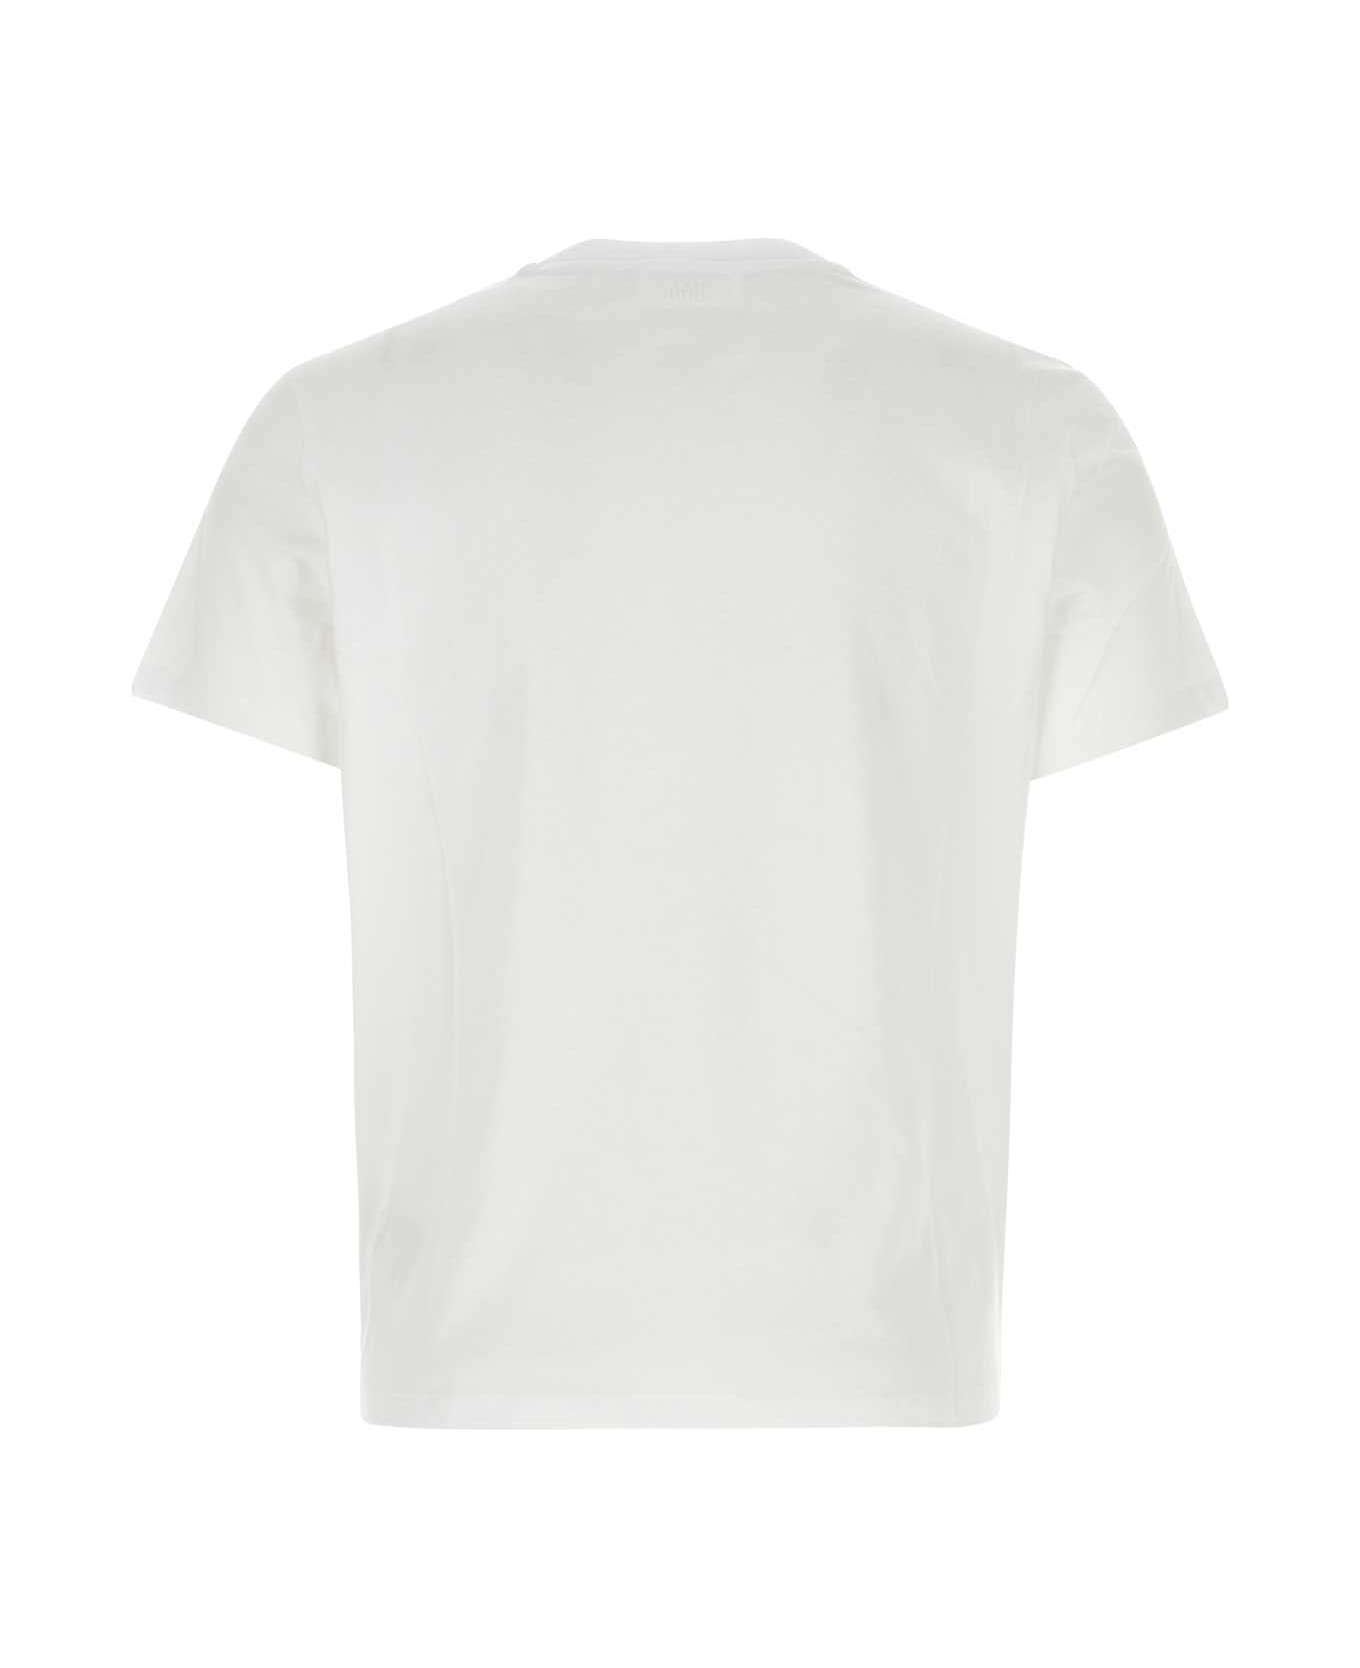 Ami Alexandre Mattiussi White Cotton T-shirt - White